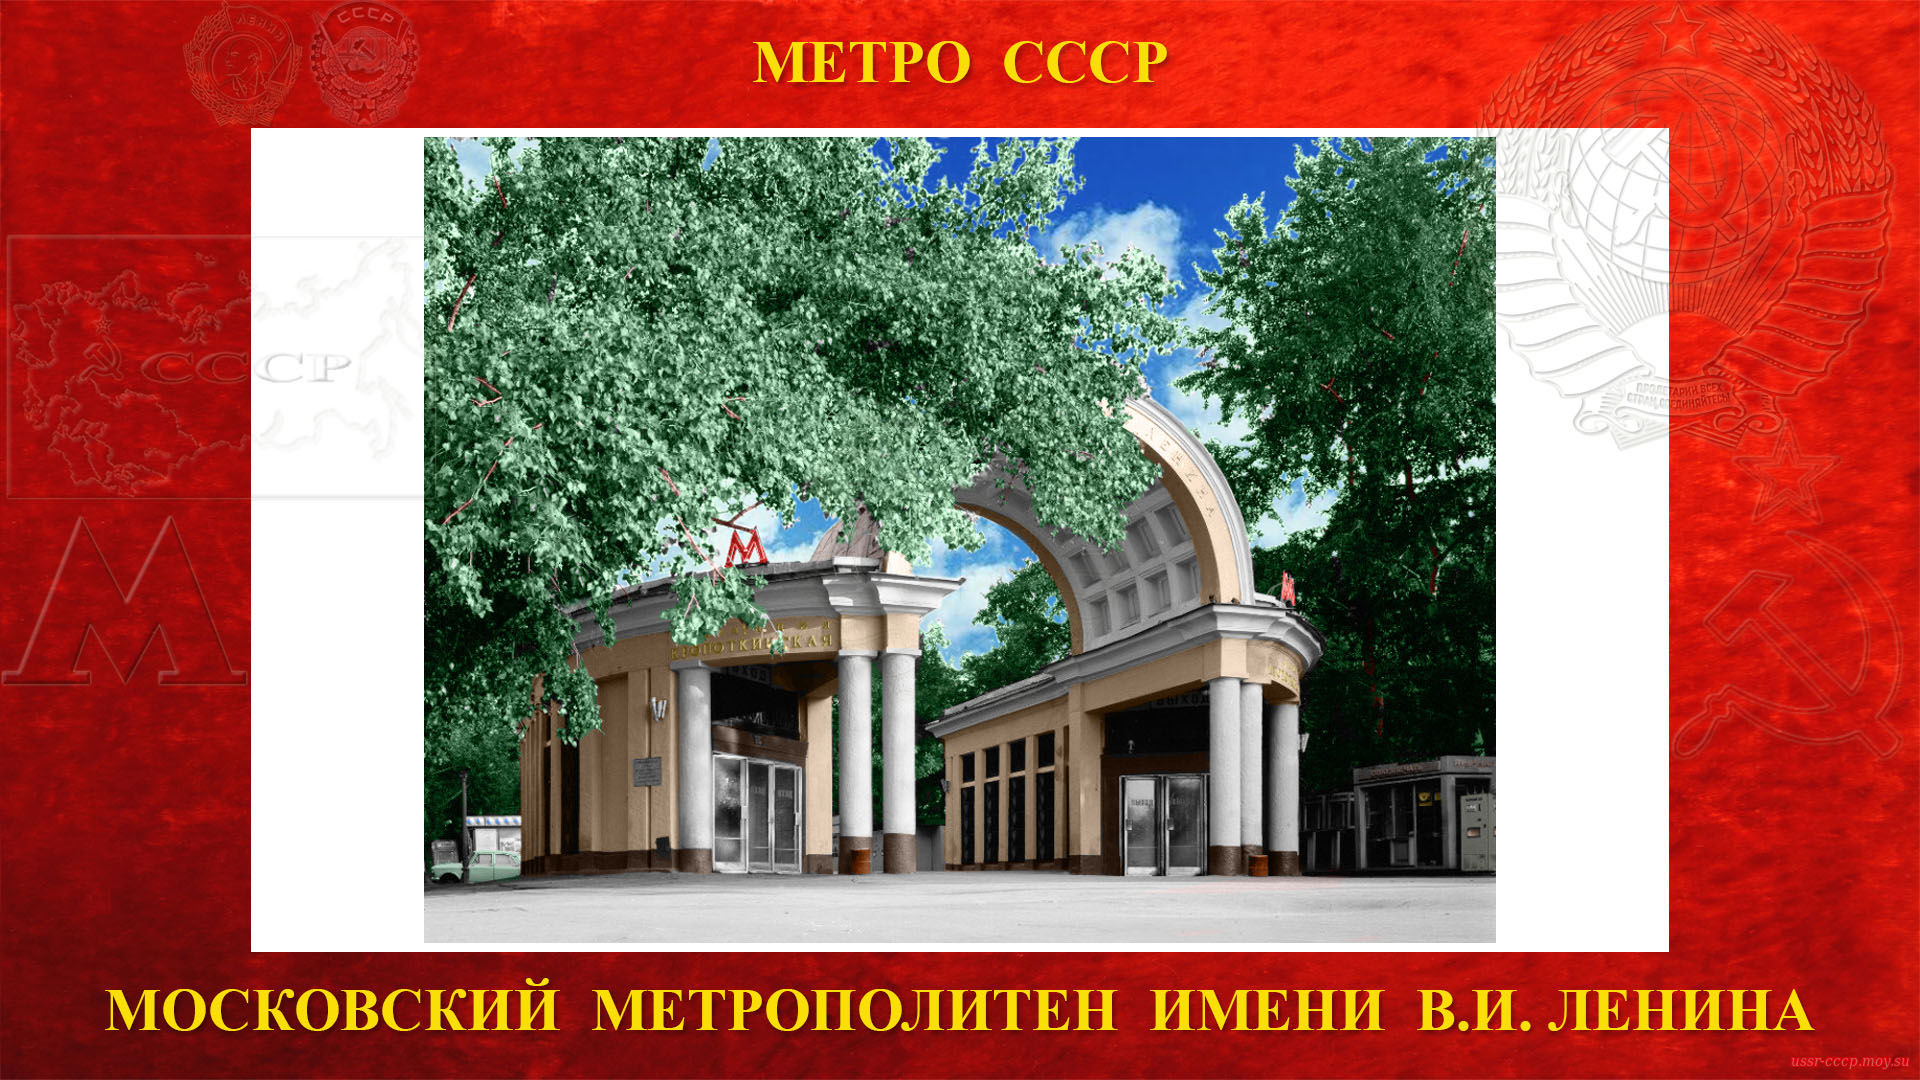 «Кропоткинская» — Станция метро в Москве (повествование)